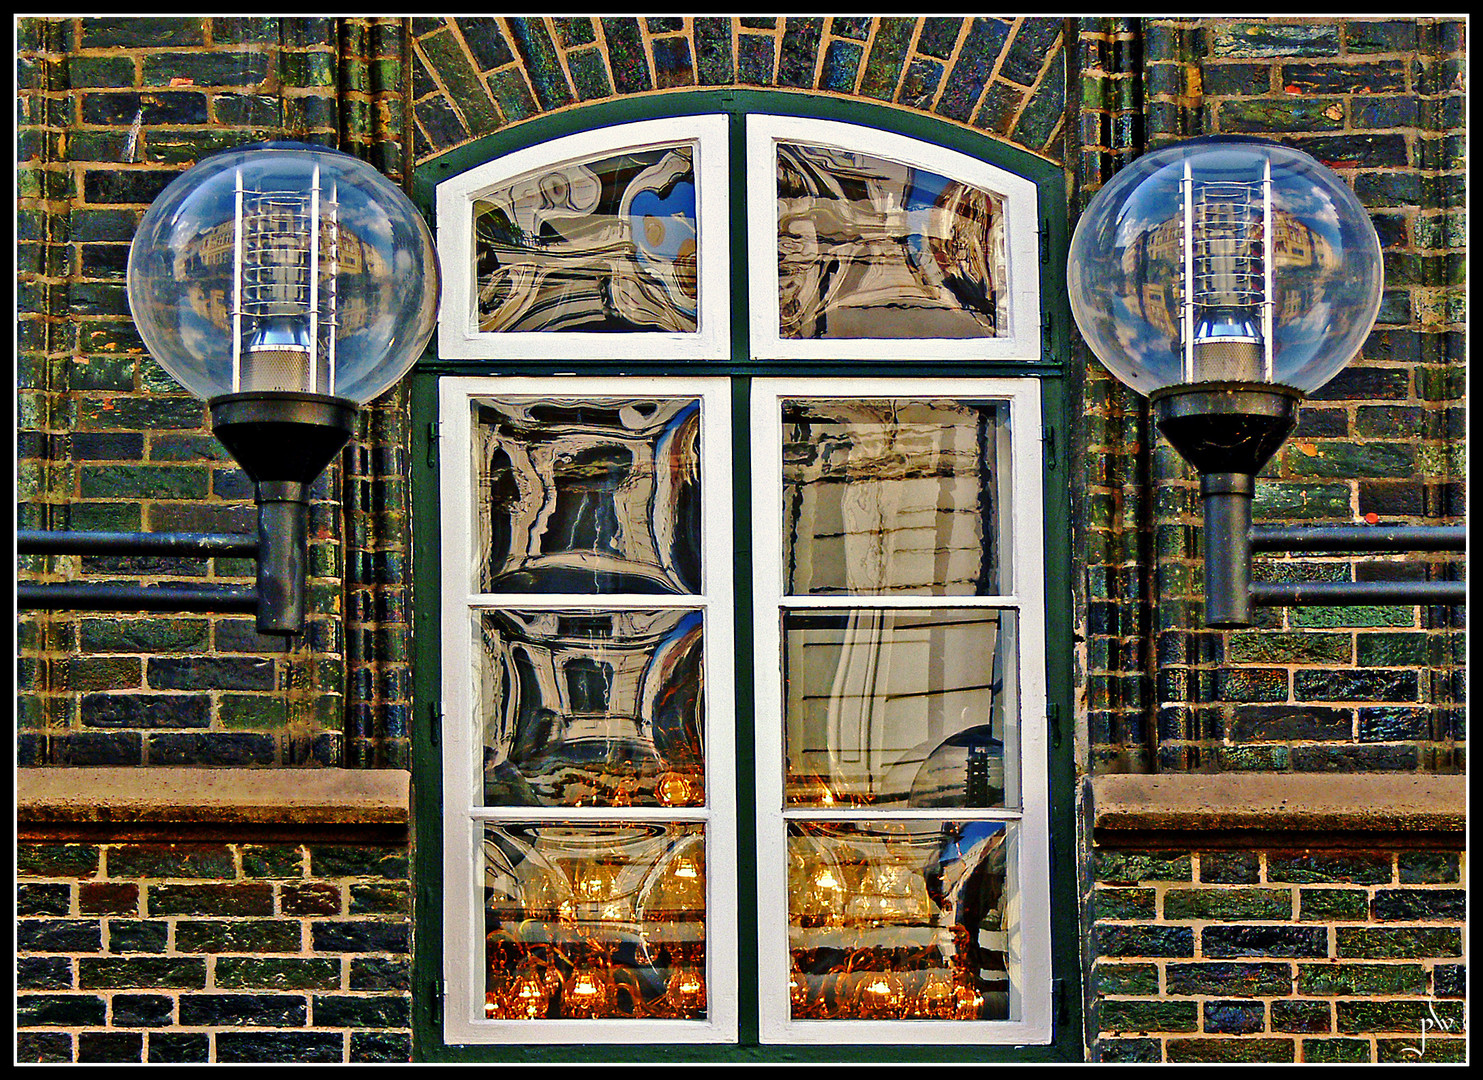 Lampen vor und an Lübecker Häusern